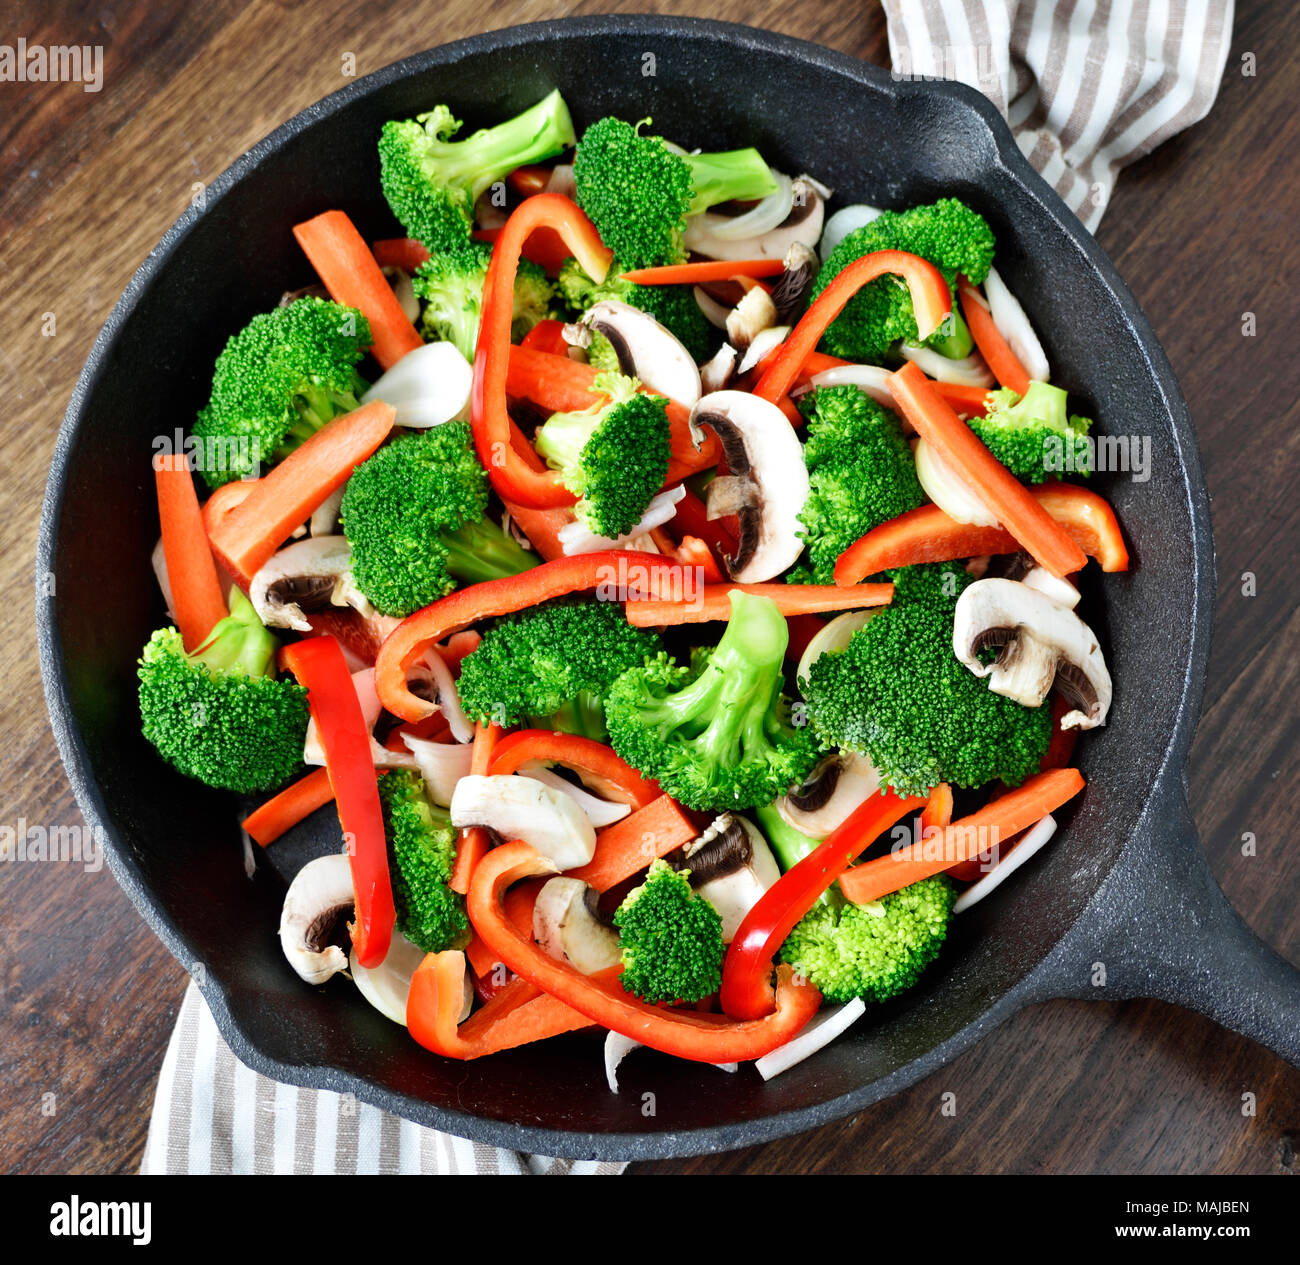 Scène de saine alimentation avec des légumes dans une poêle de fer ou plat de cuisson. Le brocoli, poivron rouge, carottes et champignons de Paris. Banque D'Images